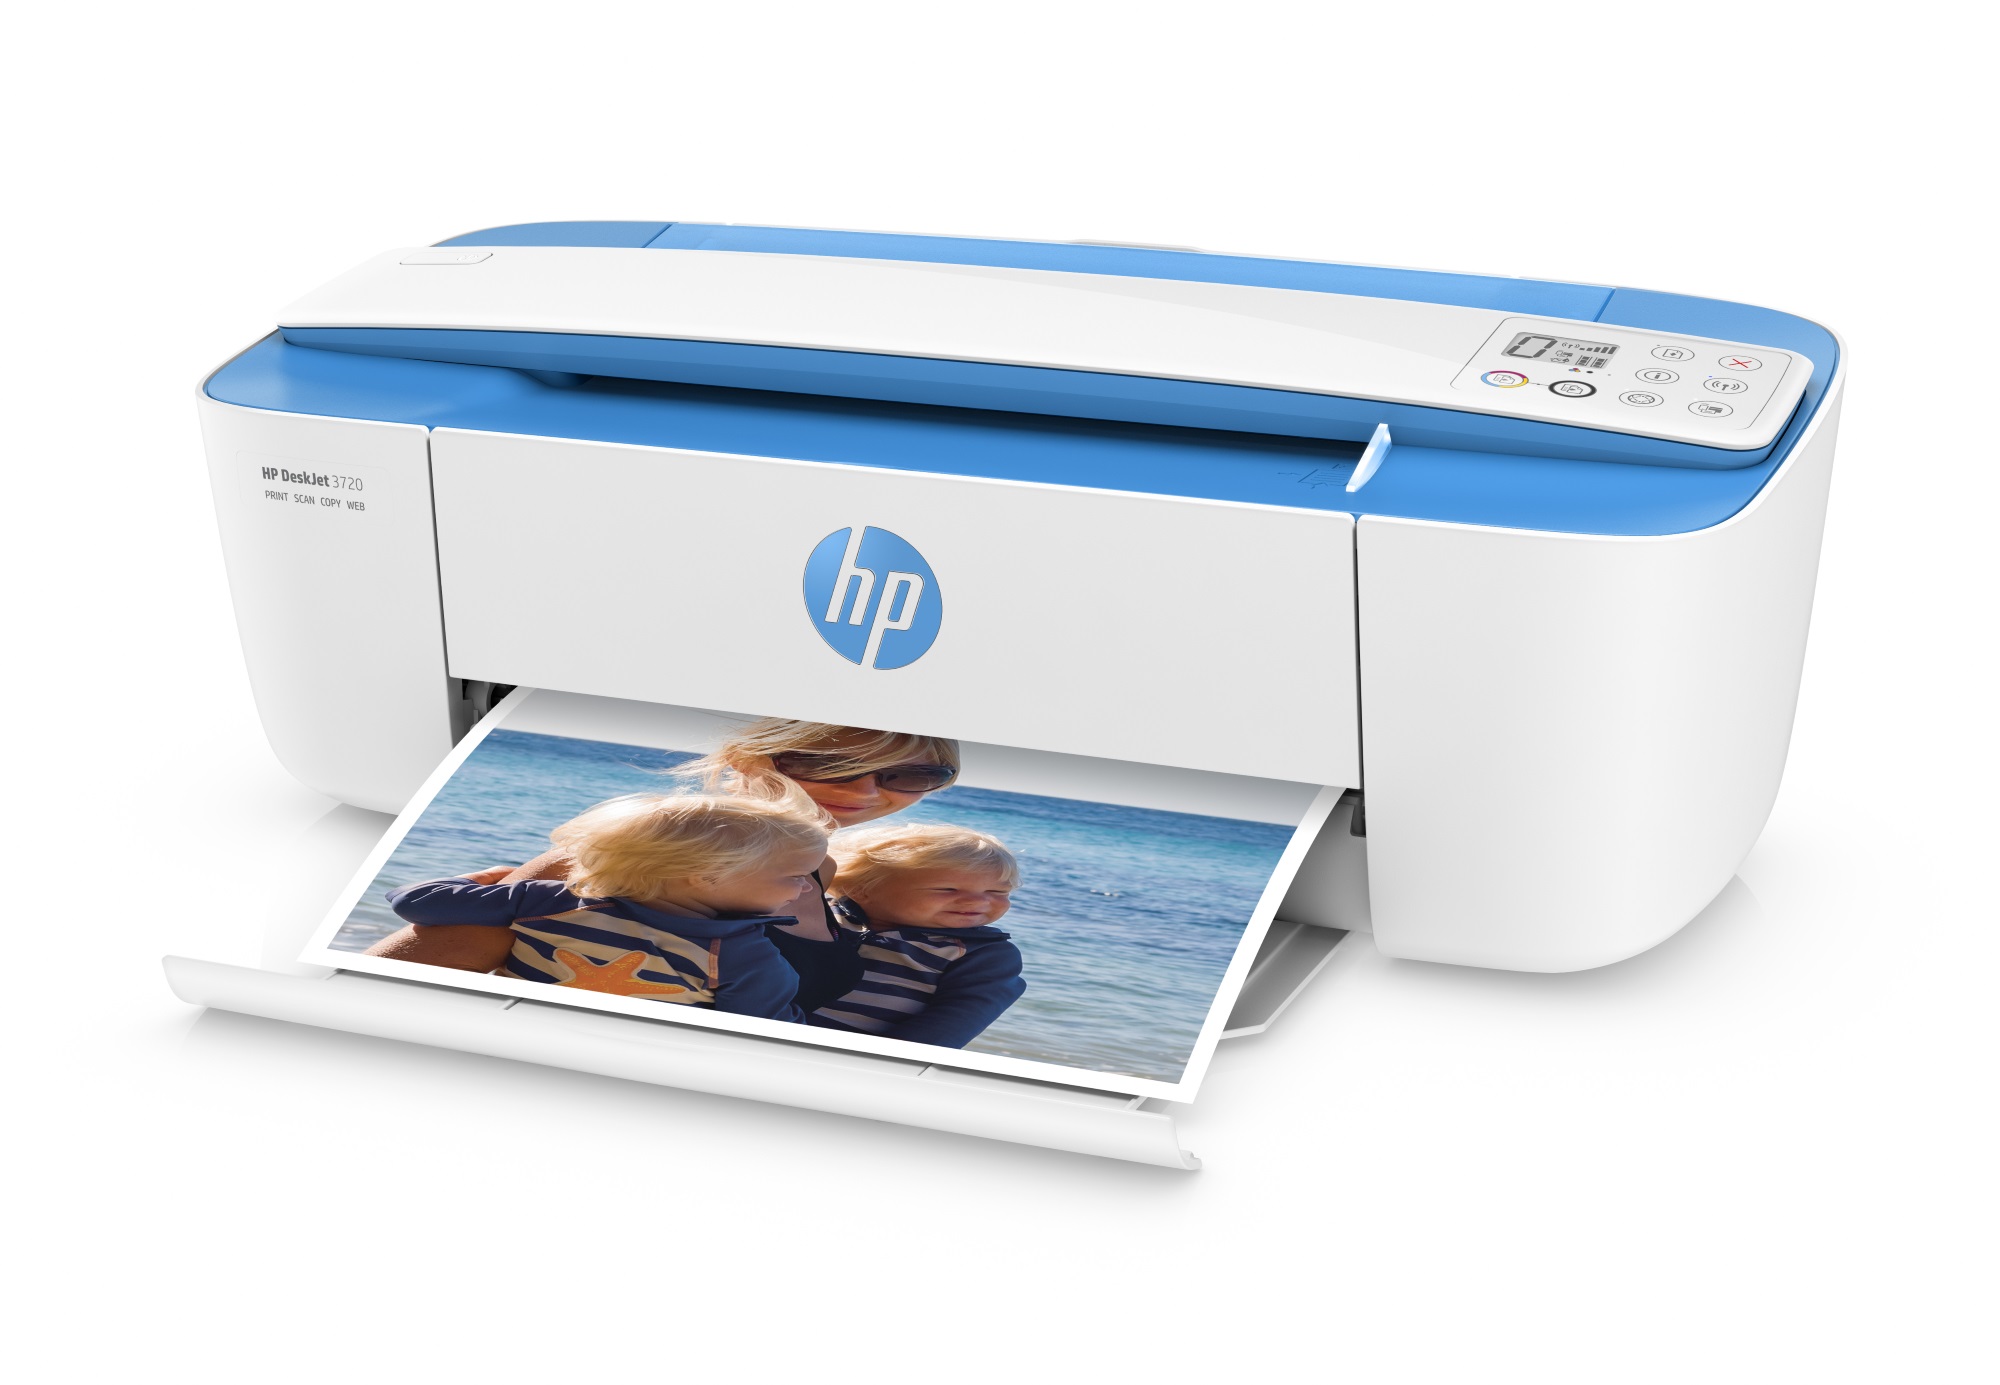 HP présente la plus petite imprimante multifonction du marché